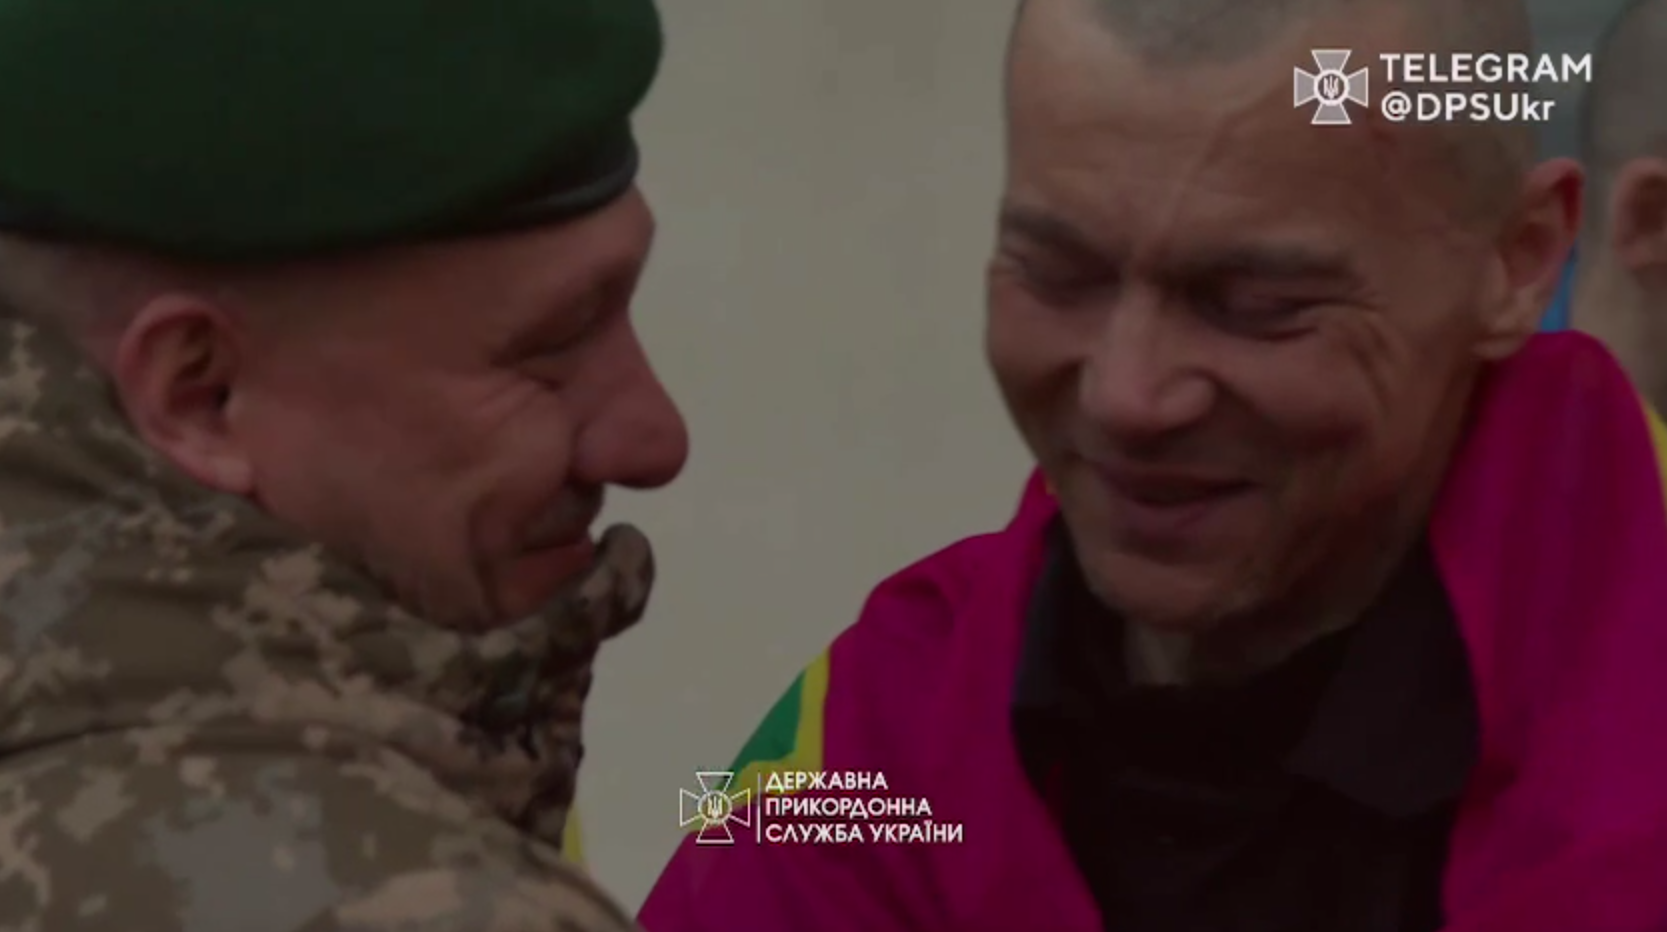 "Привіт, мамо, я повернувся": у ДПСУ показали зворушливі кадри з українцями, яких вдалося повернути з полону. Відео